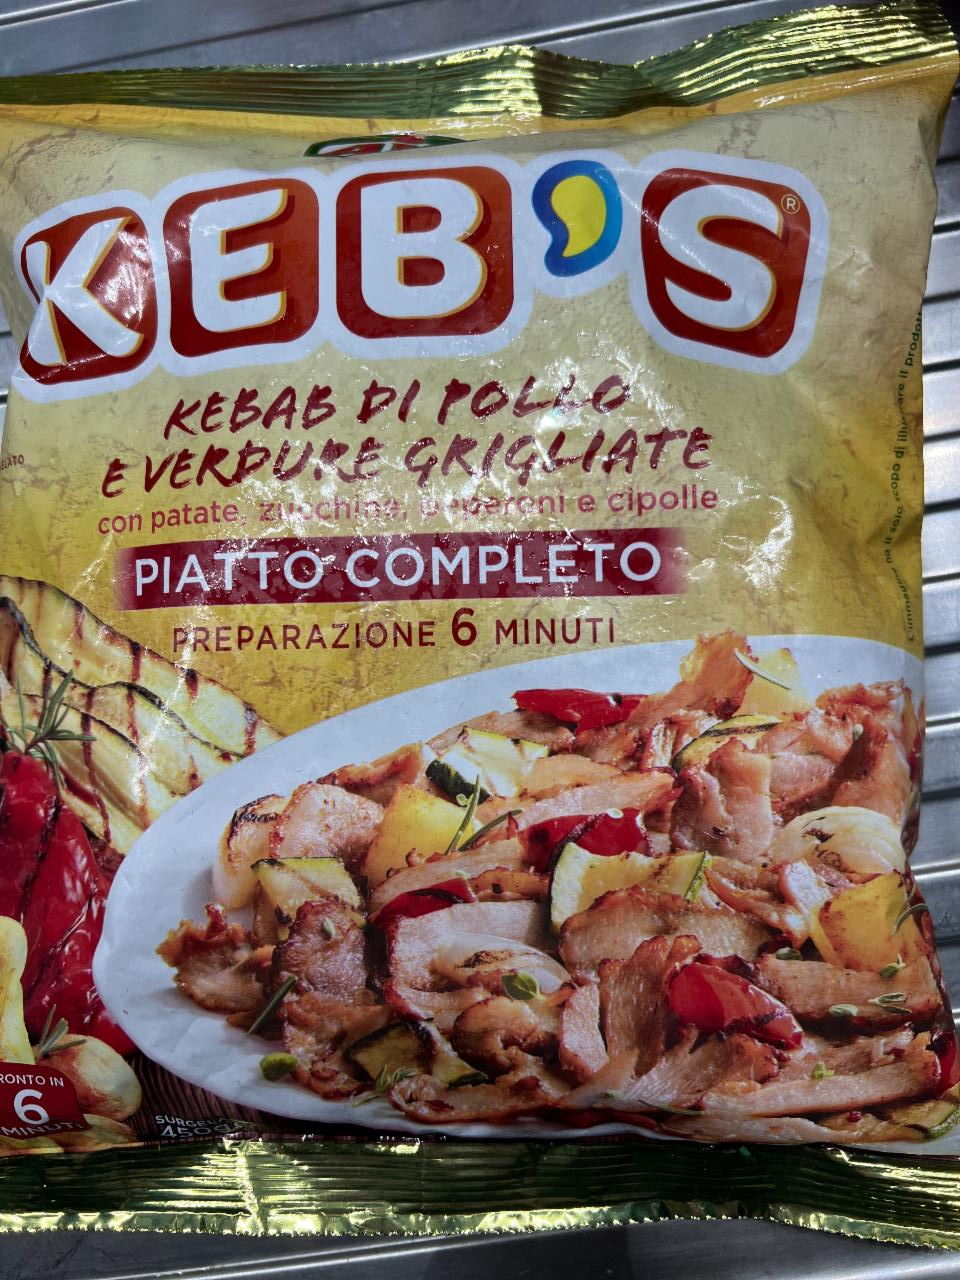 Fotografie - Kebab di pollo Keb's Aia